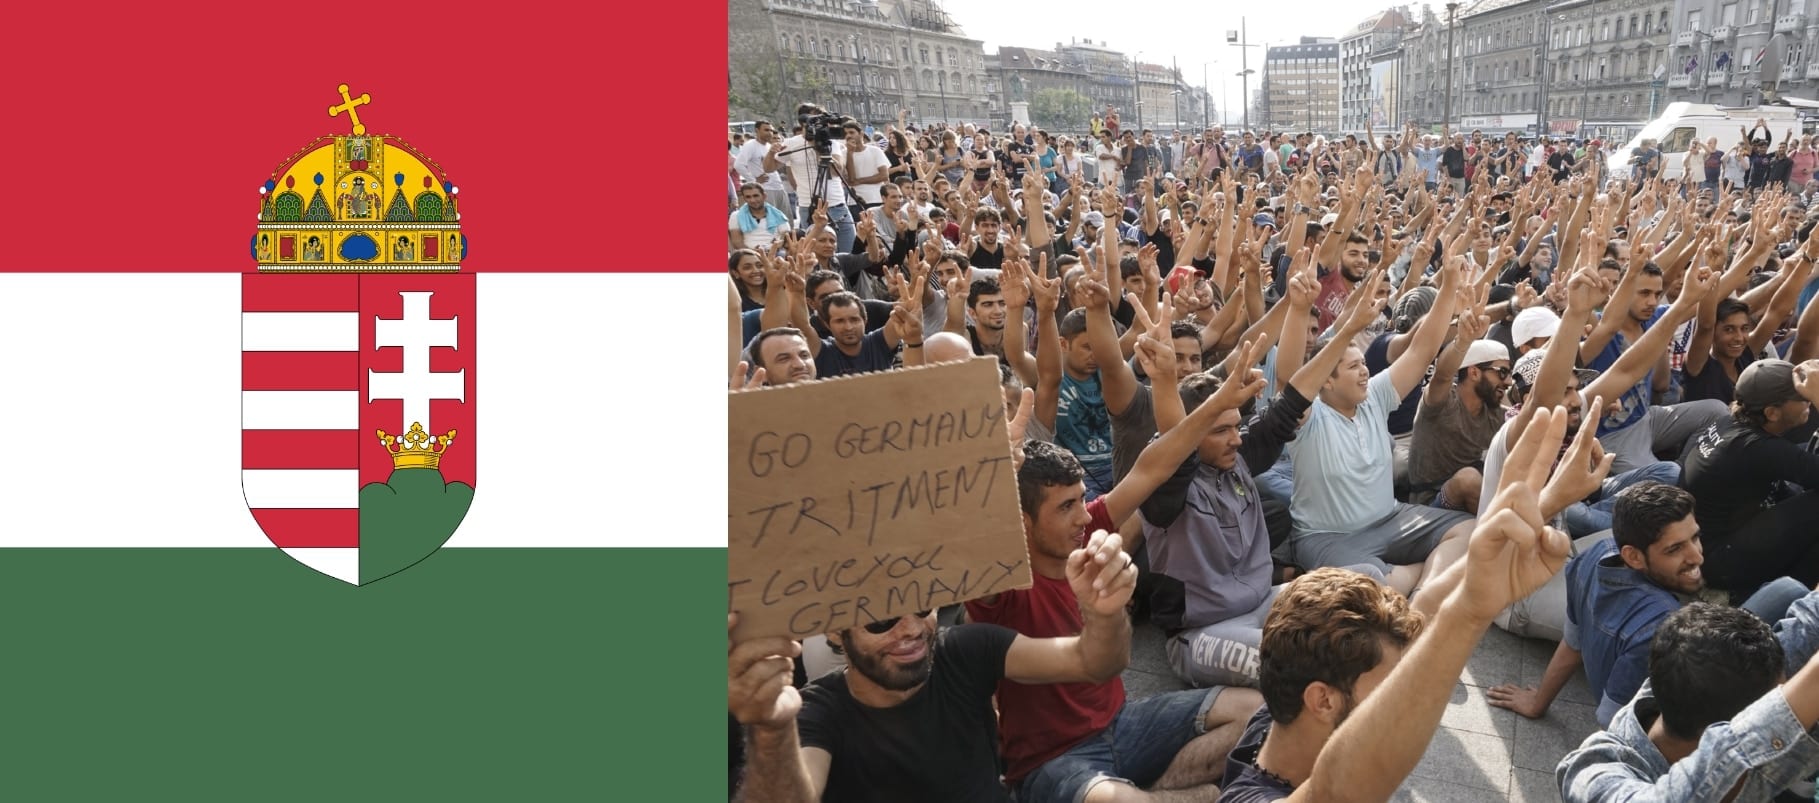 Pierwszy węgierski raport o imigrantach. Węgrzy są przeciw!